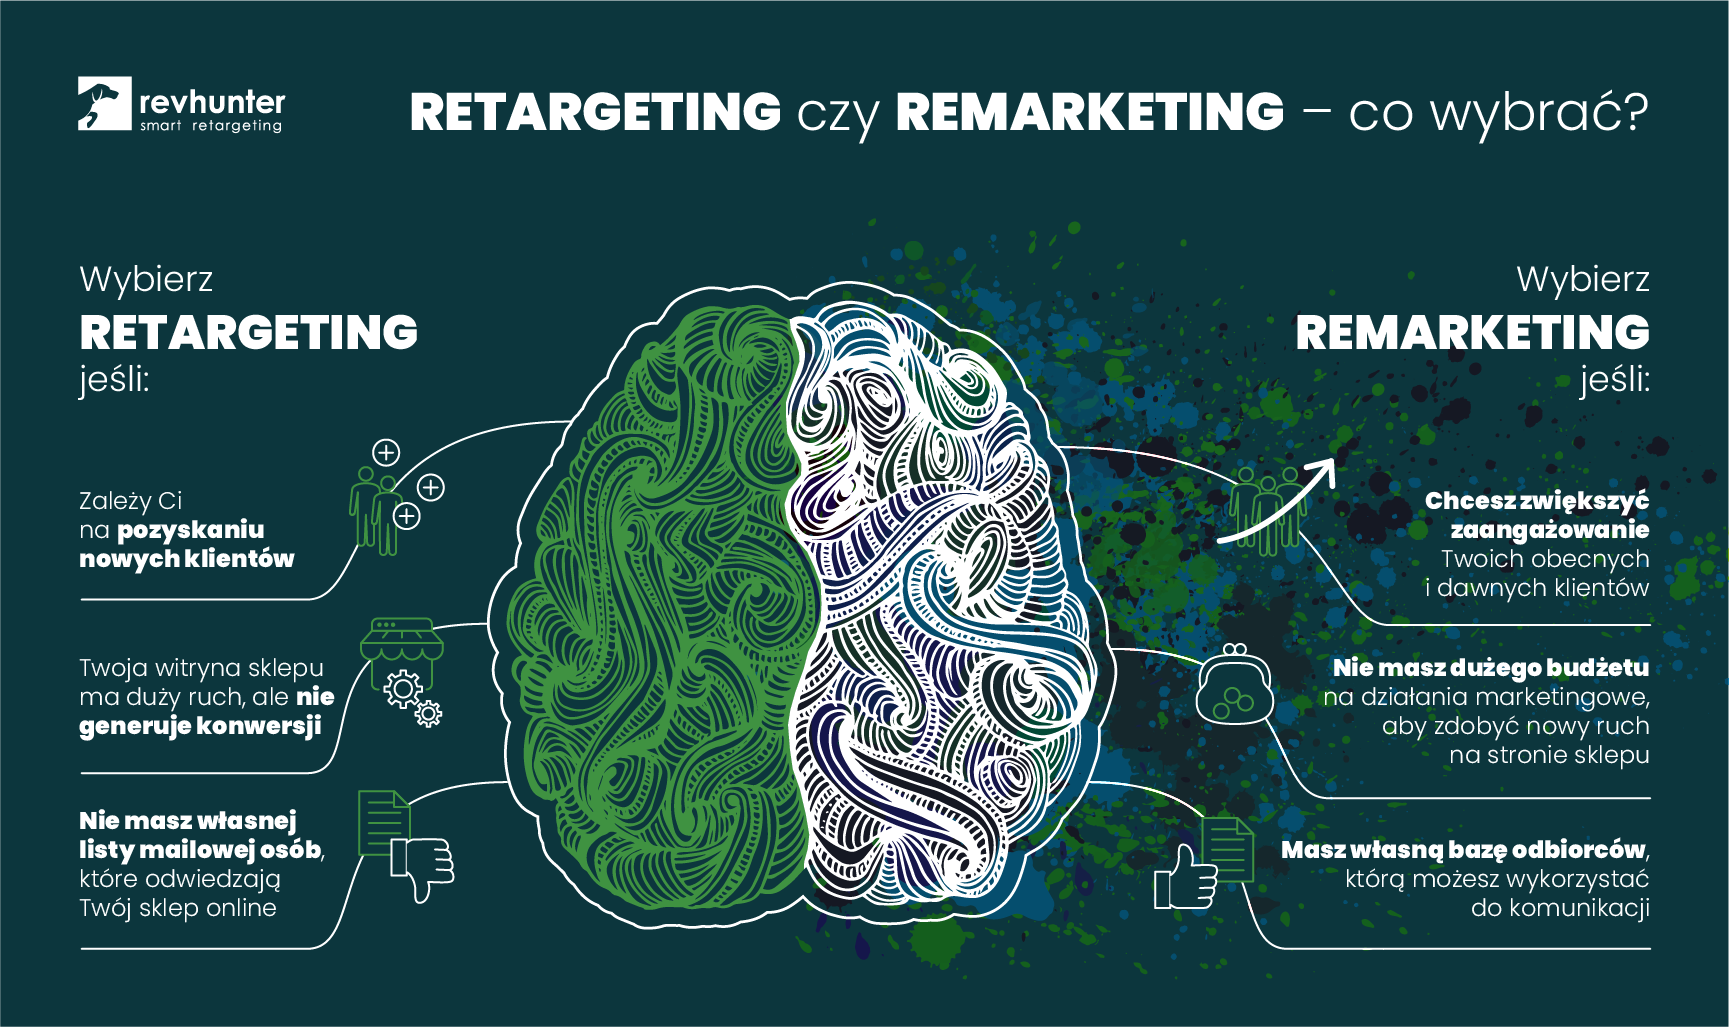 remarketing_a_retargeting_co_wybrac_infografika